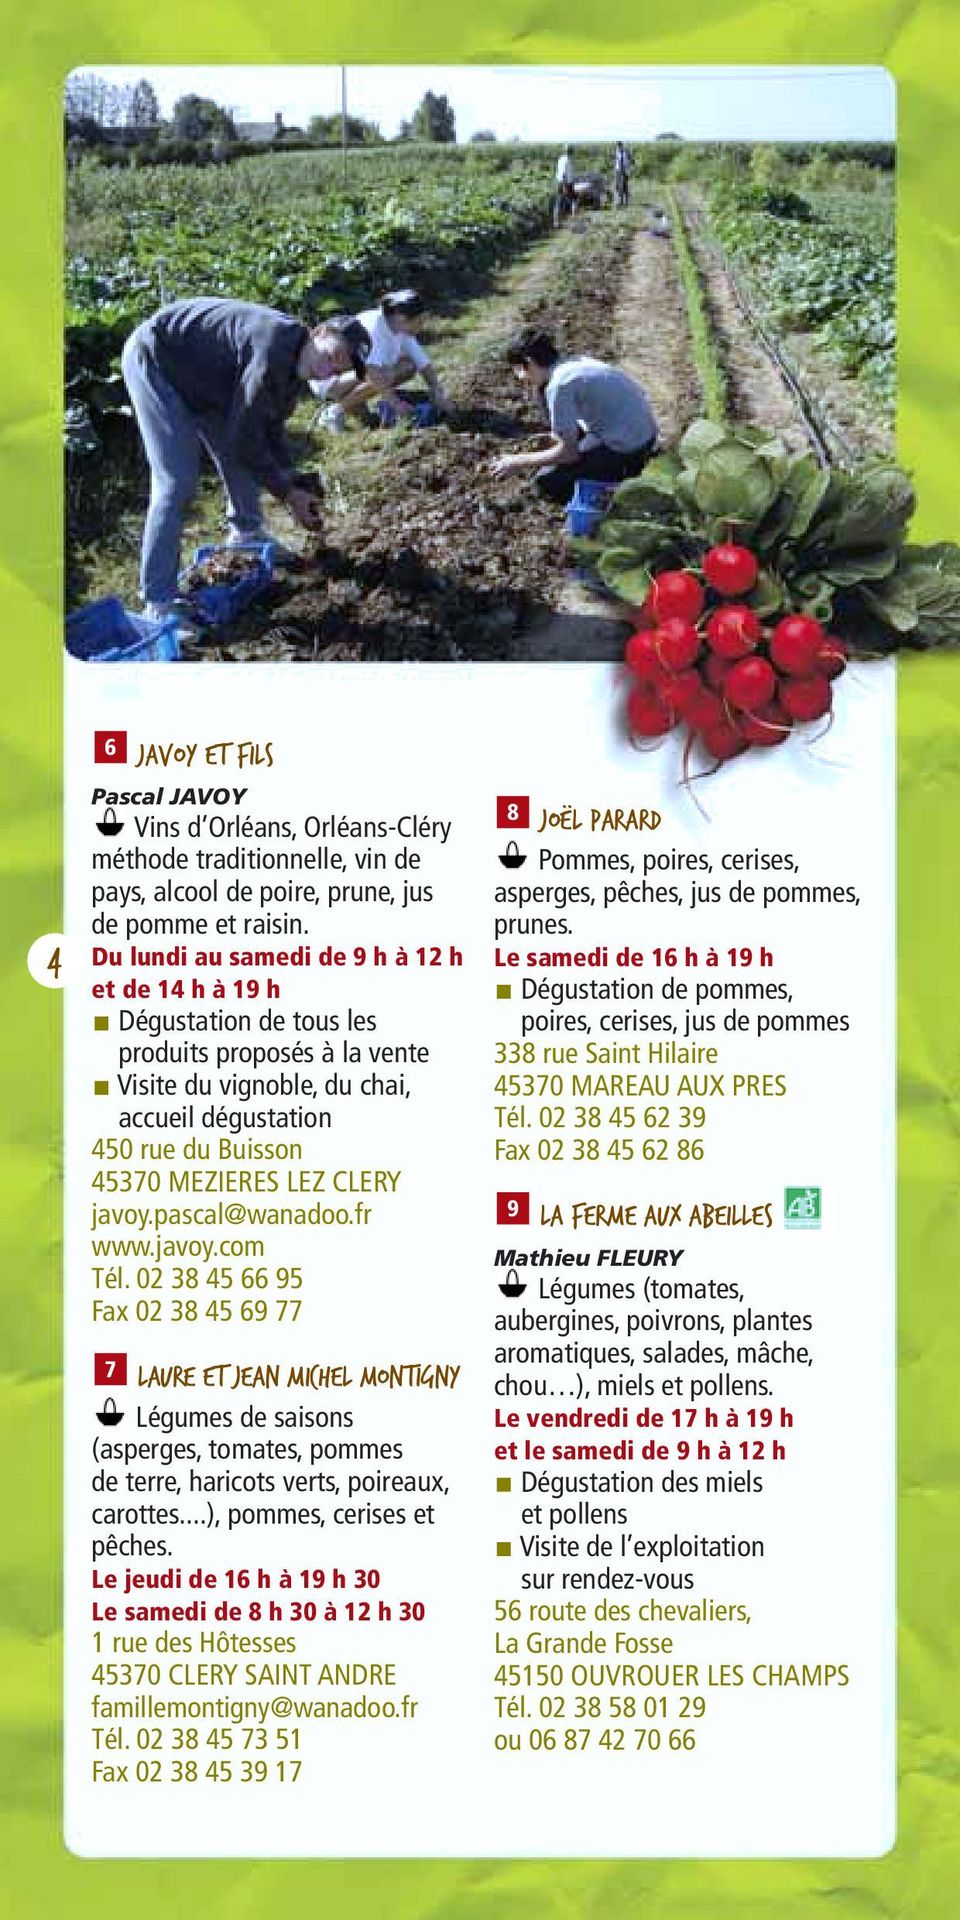 javoy.pascal@wanadoo.fr www.javoy.com Tél. 02 38 45 66 95 Fax 02 38 45 69 77 7 Laure et Jean Michel Montigny Légumes de saisons (asperges, tomates, pommes de terre, haricots verts, poireaux, carottes.